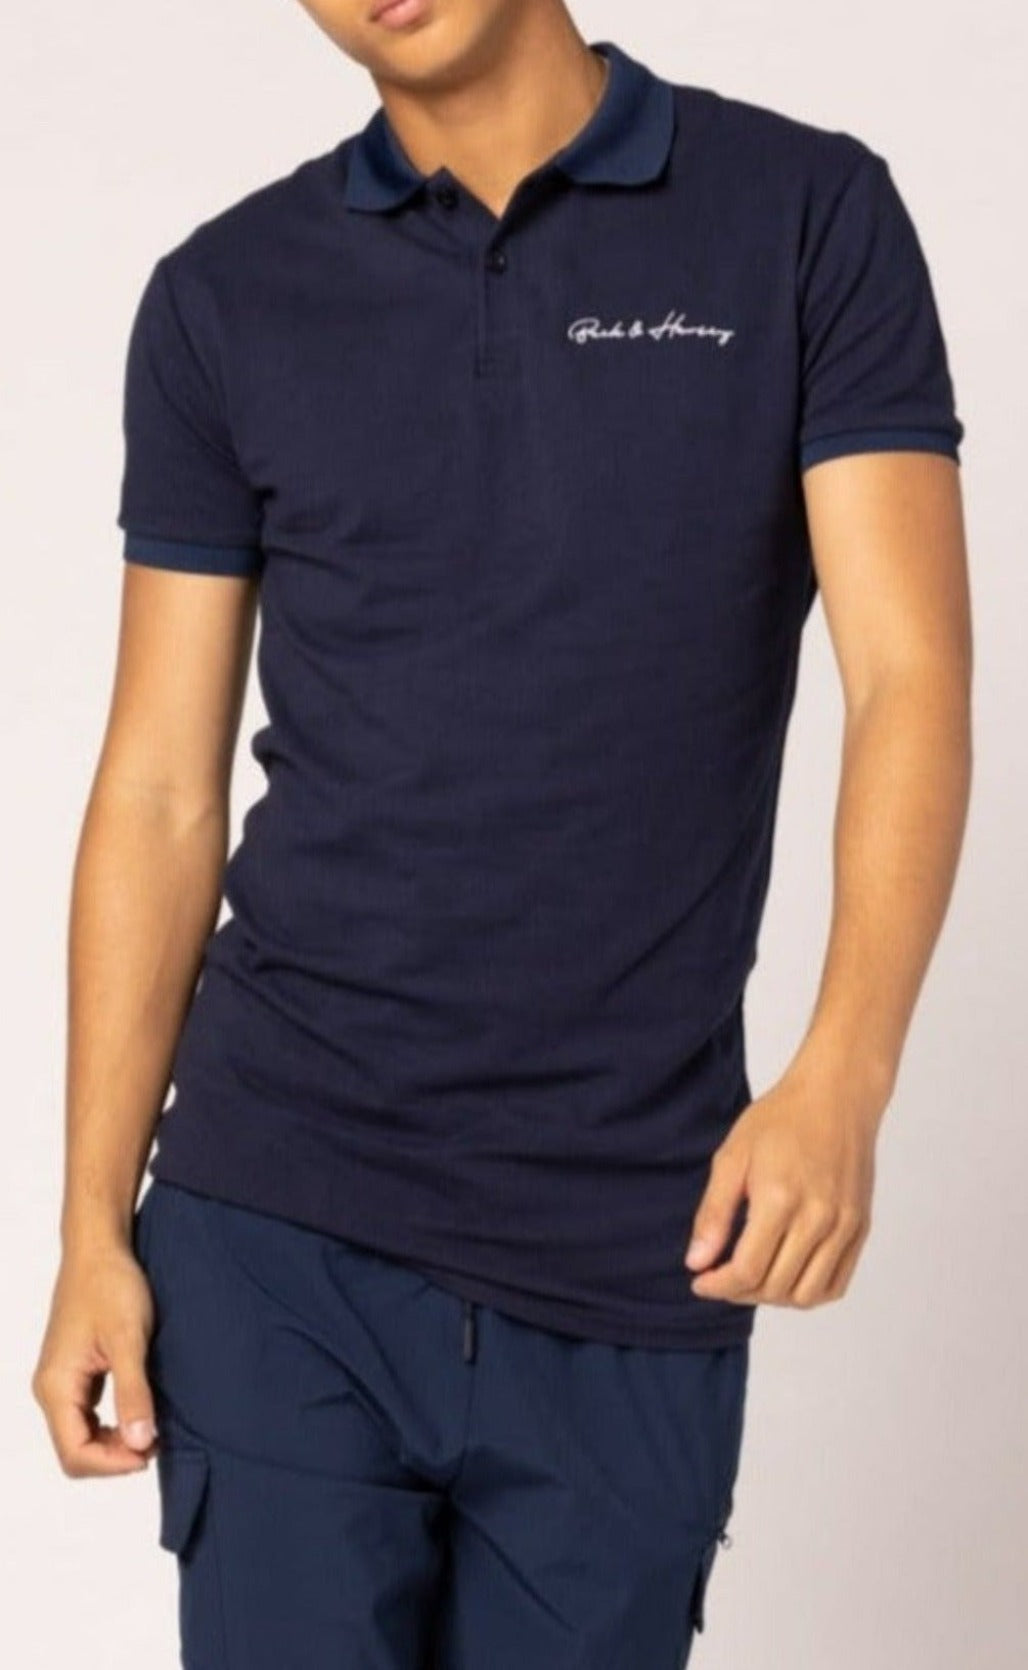 BAROLO Polo Shirt - Navy